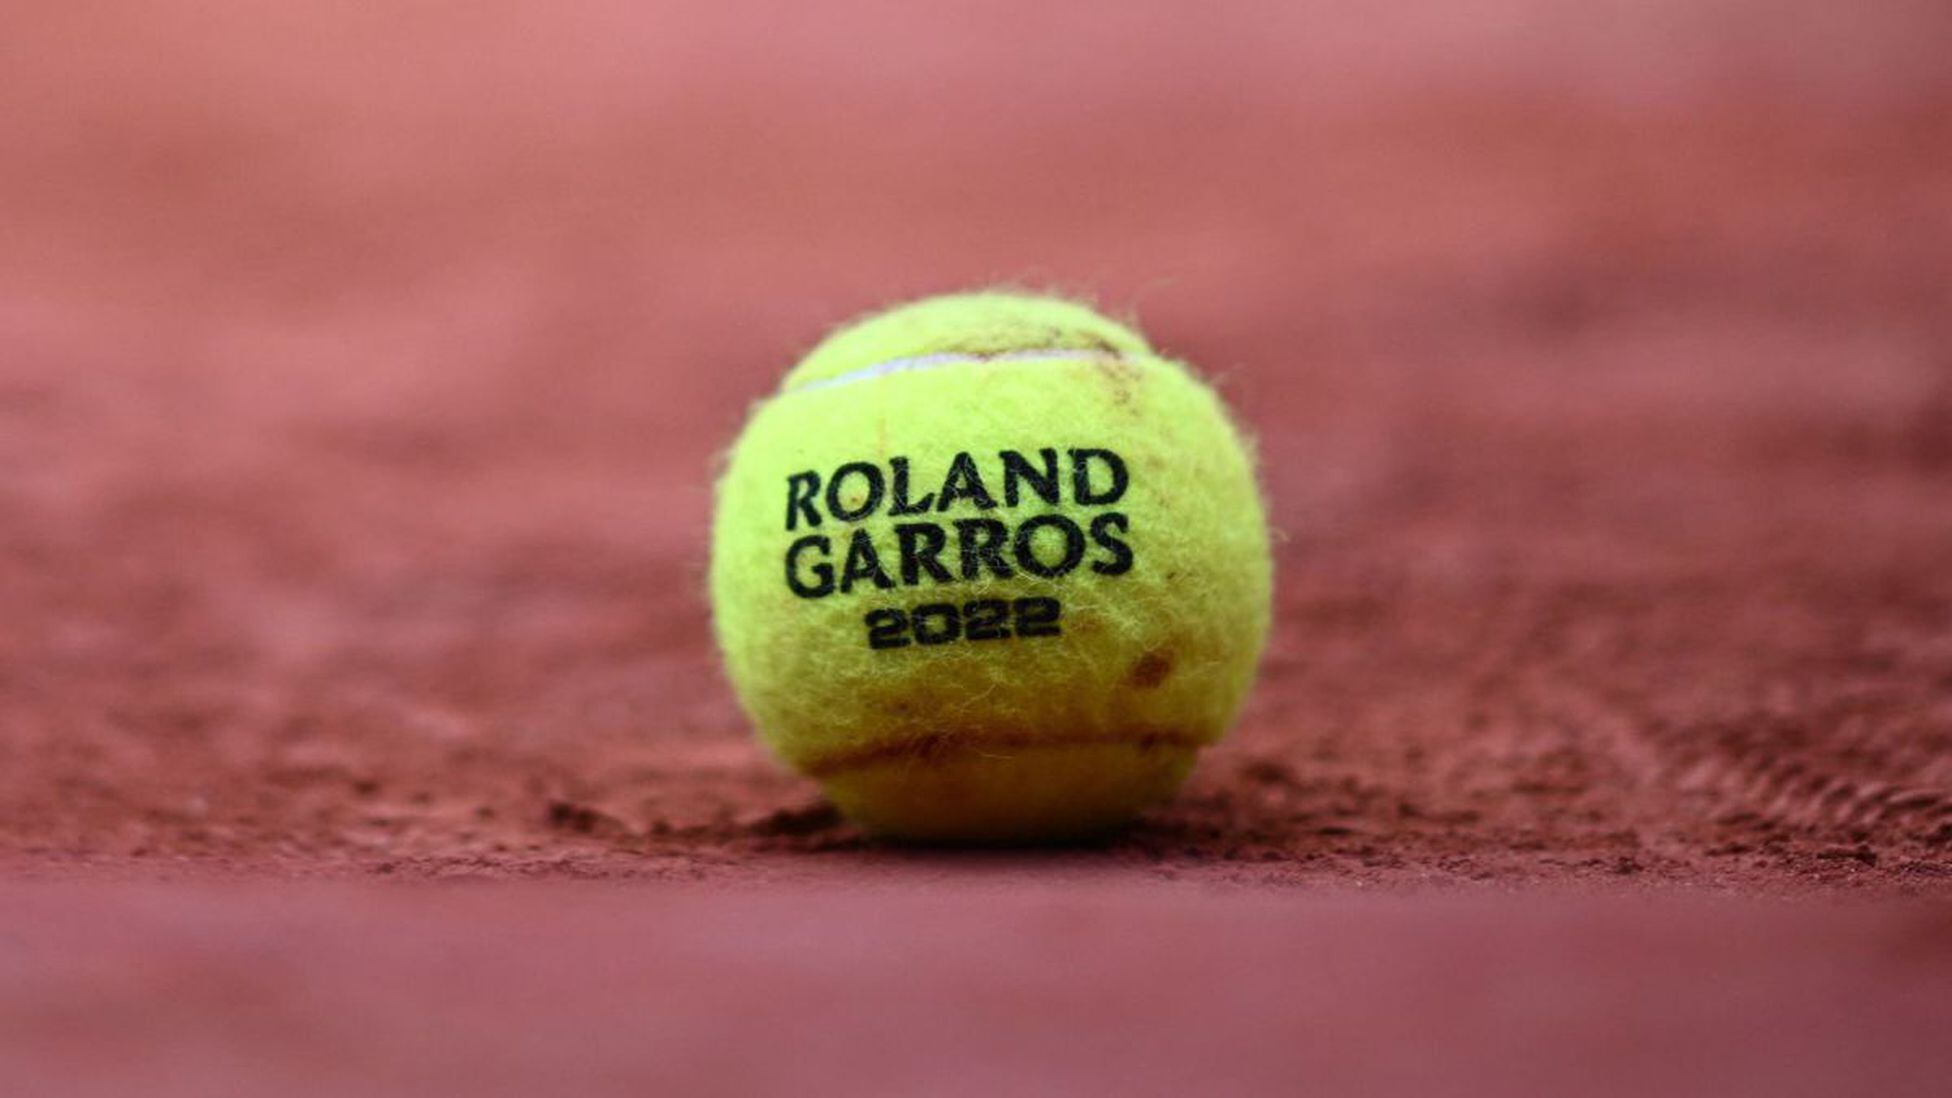 ¿Qué cadena retransmite Roland Garros